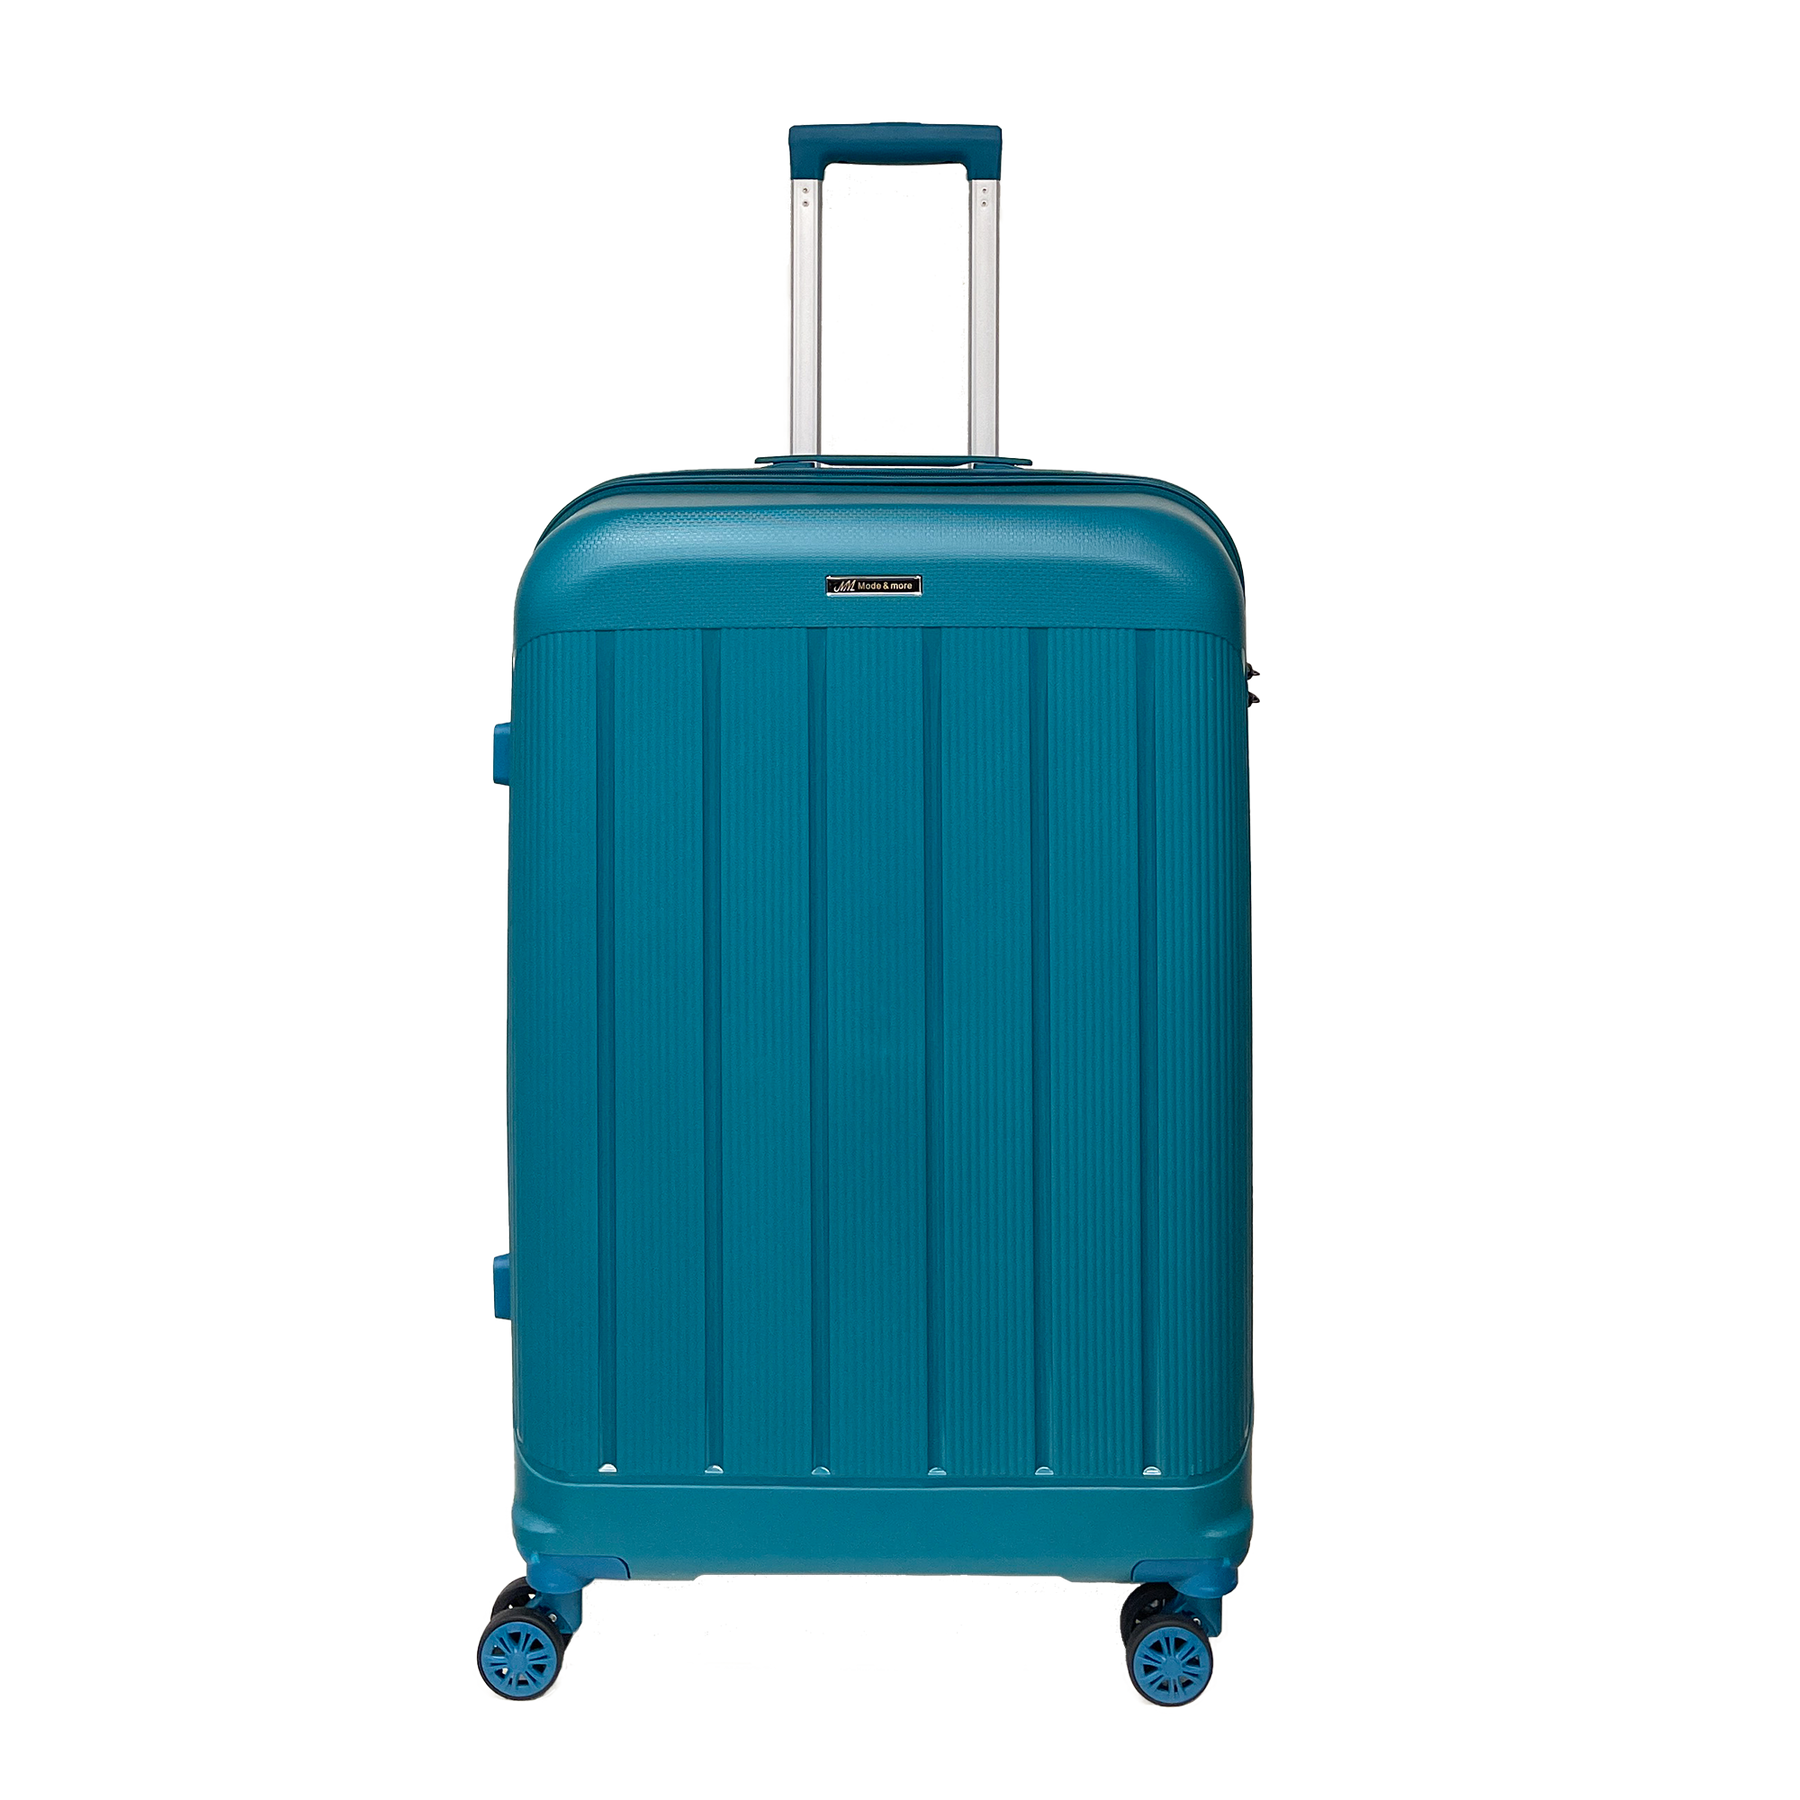 Μεγάλο ελαφρύ φως βαλίτσας πολυπροπυλενίου 74x50x30cm με κλειδαριά TSA